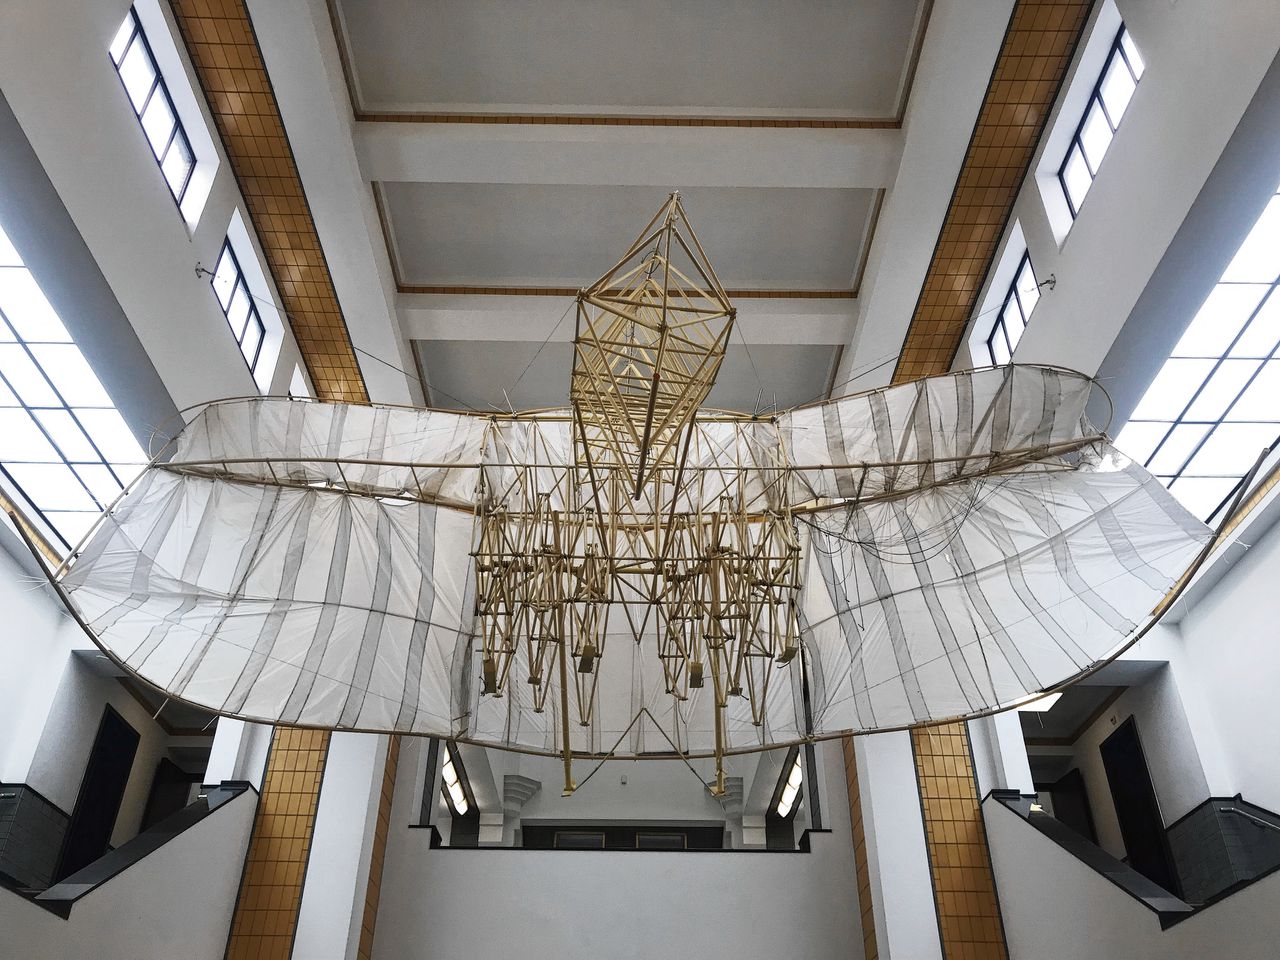 Strandbeest uit het Volantum (2020-2021) van Theo Jansen in Kunstmuseum Den Haag